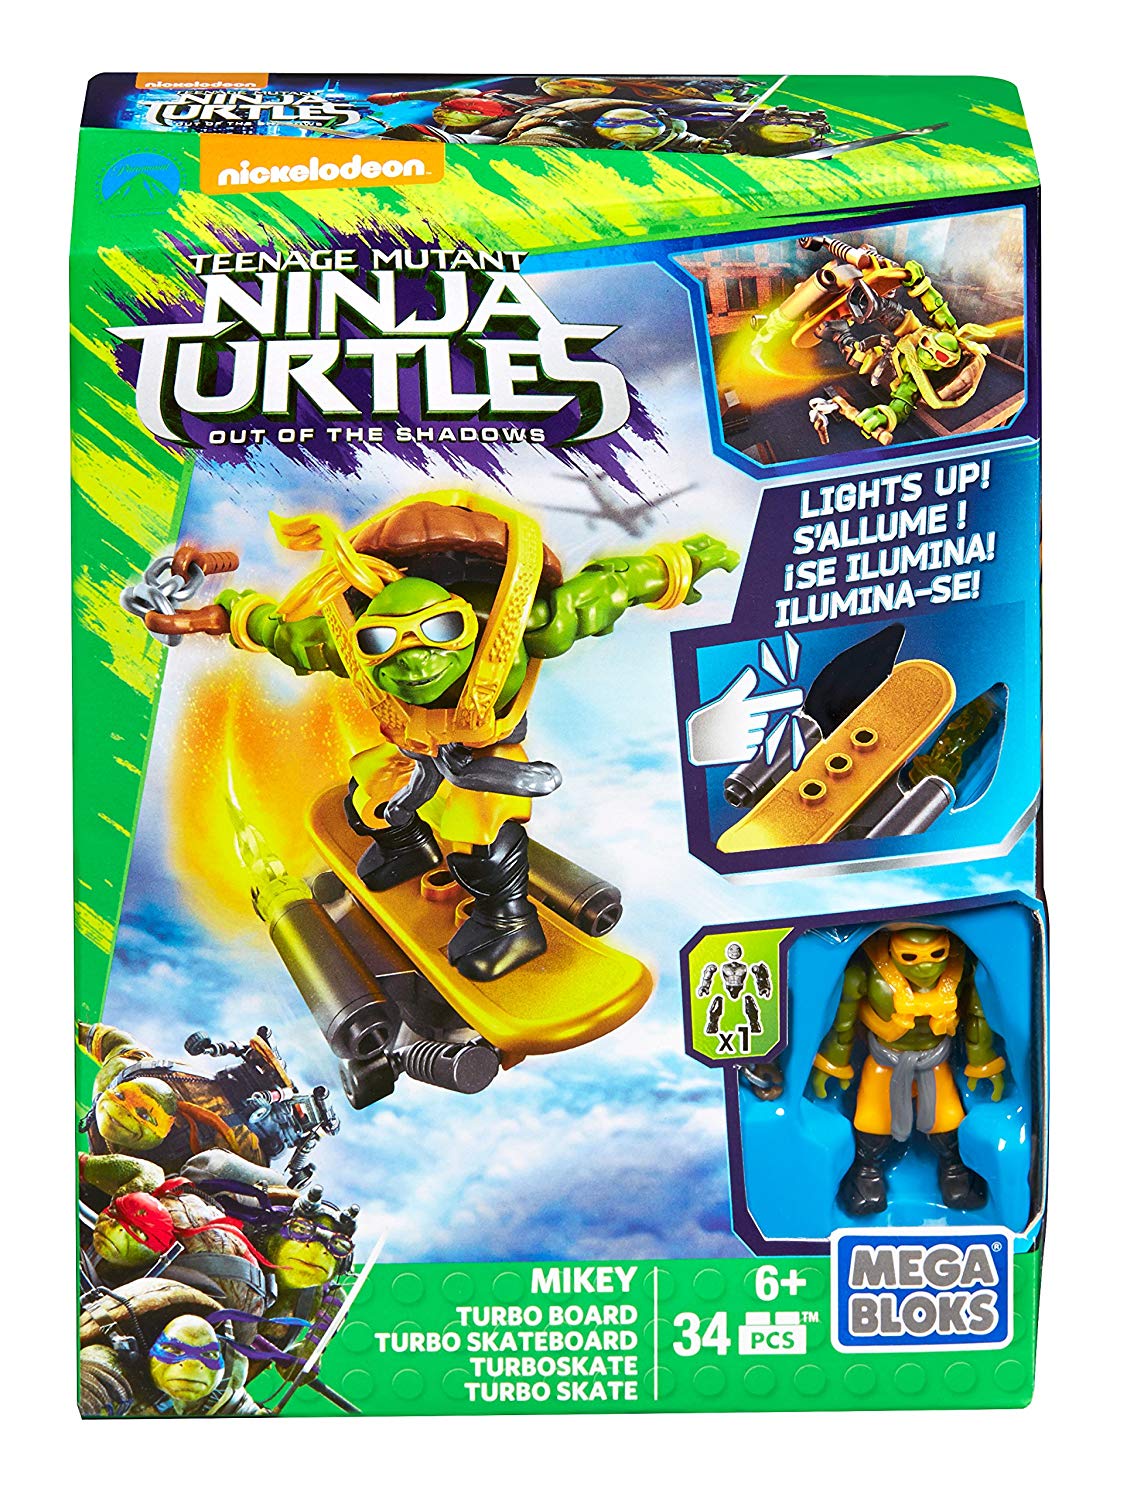 Mega Bloks Teenage Mutant Ninja Turtles Mikey Turbo Skateboard Assort A